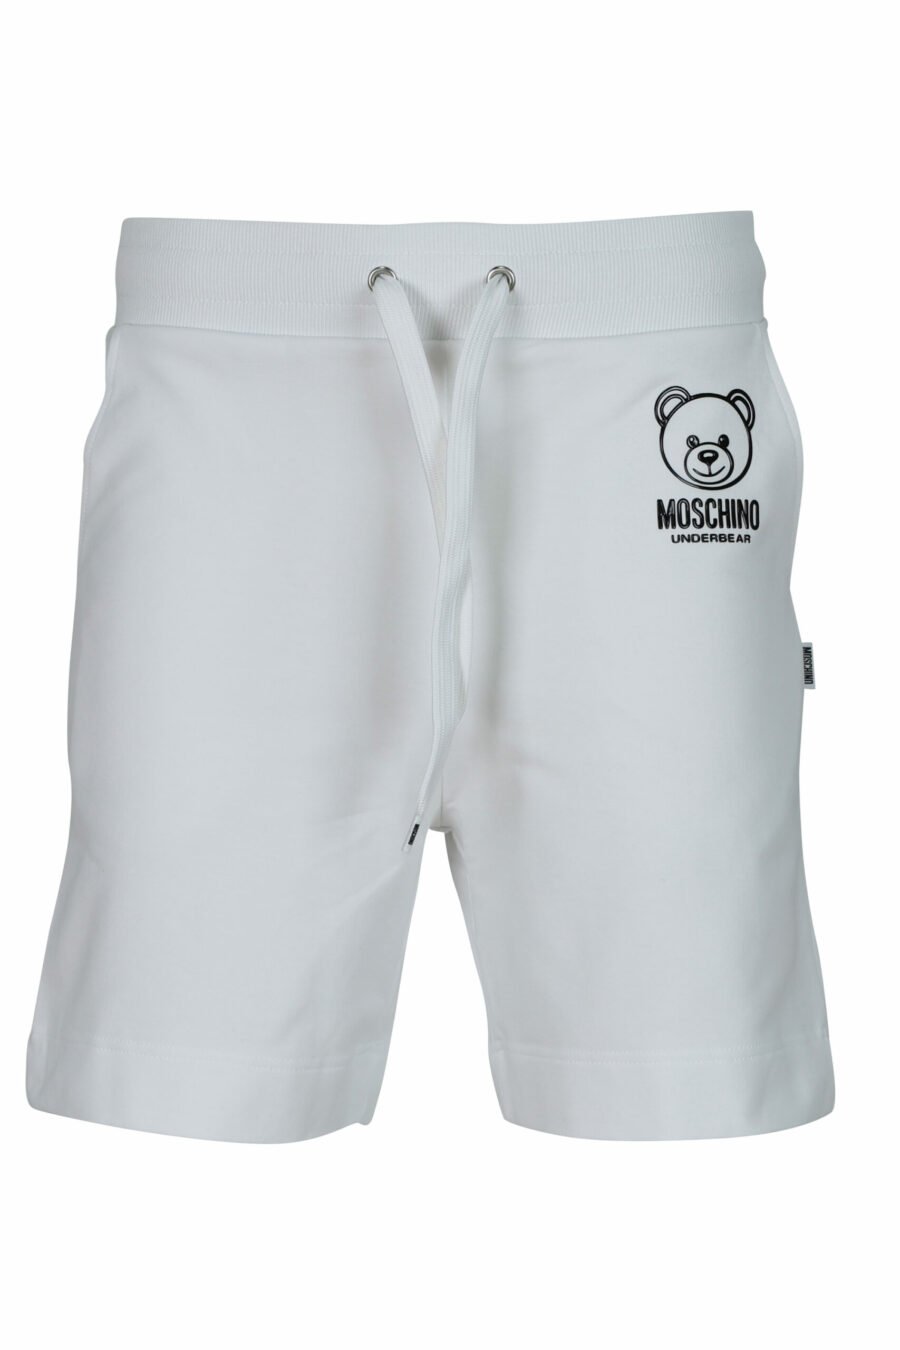 Bas de survêtement blanc avec mini-logo de l'ours "underbear" caoutchouté noir - 667113622149 scaled